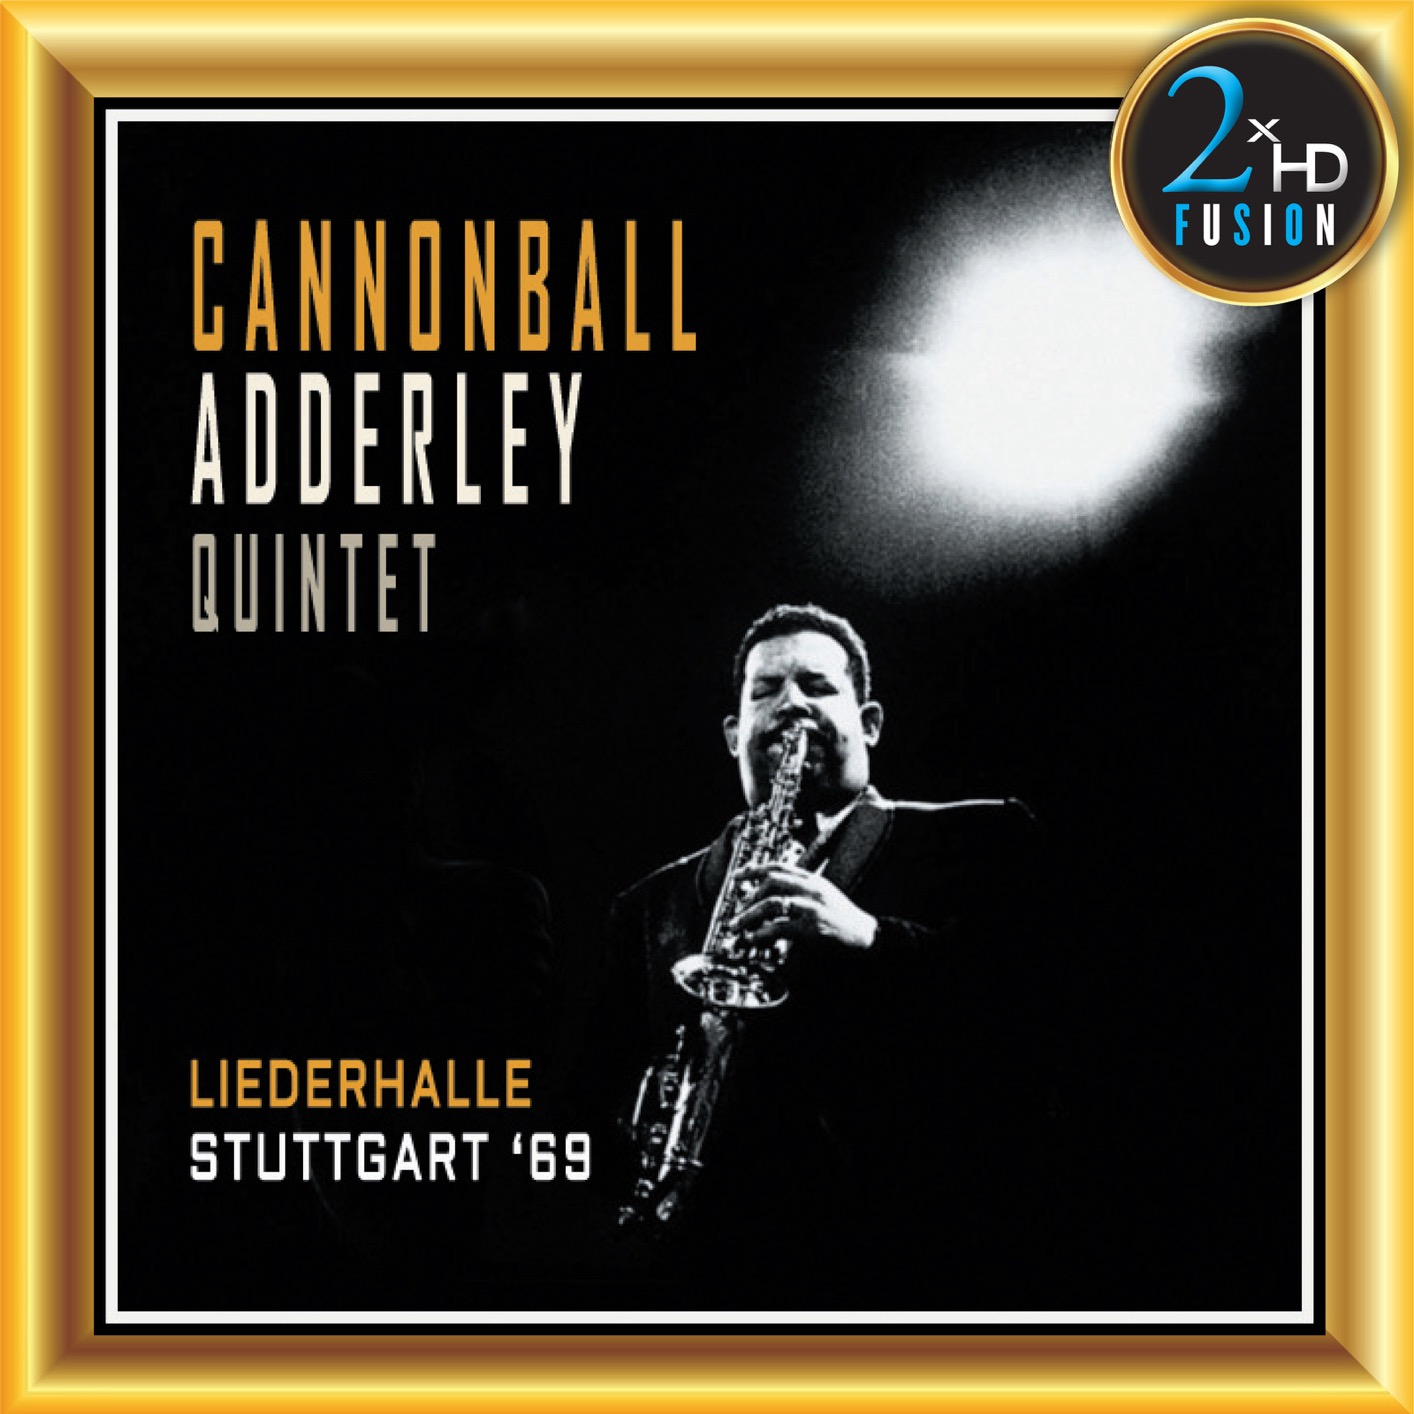 Cannonball Adderley Quintet – Cannonball Adderley Quintet (2018) [Official Digital Download 24bit/192kHz]